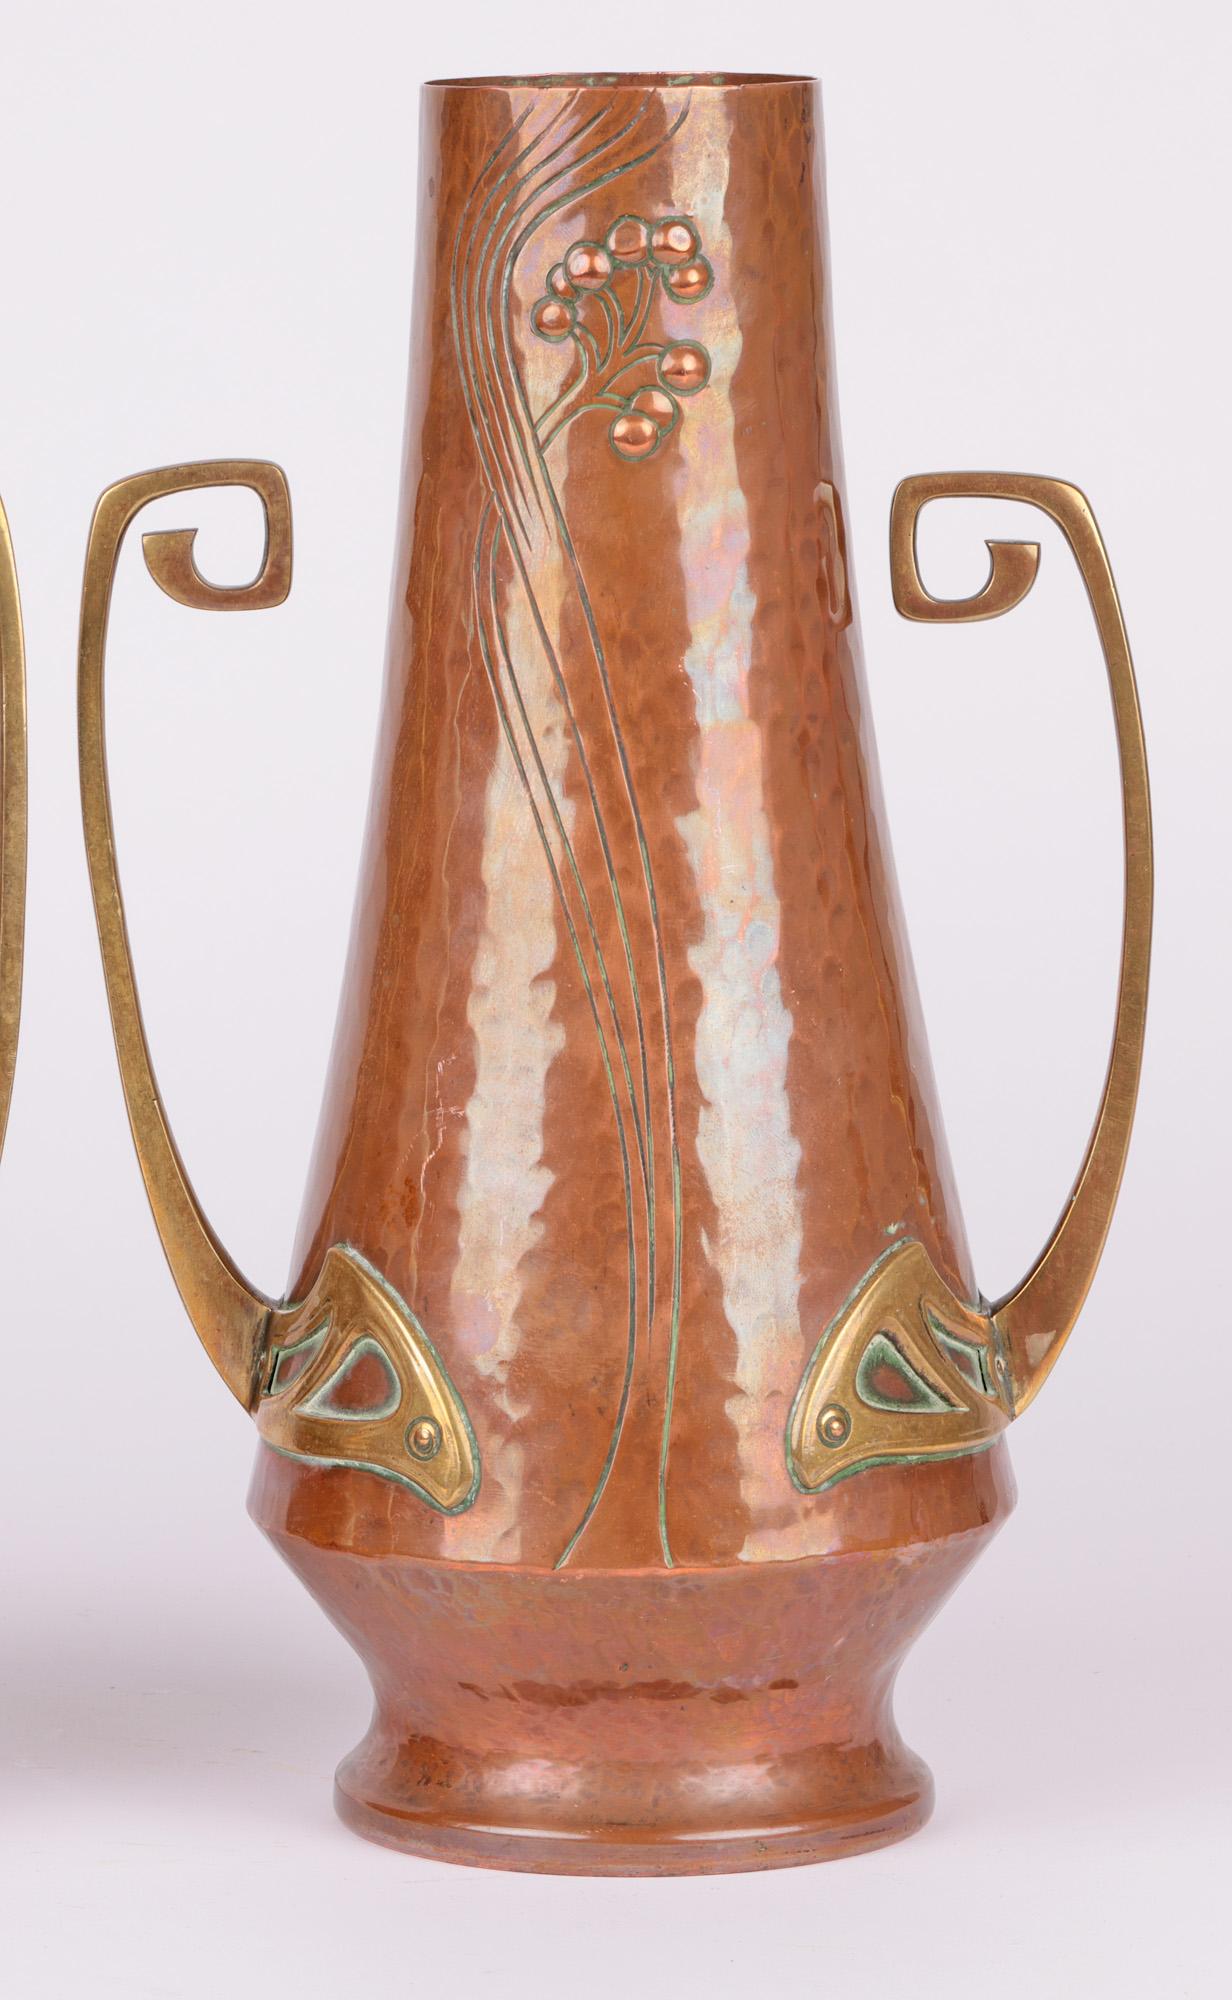 Hand-Crafted WMF Pair Jugendstil Copper & Brass Twin Handled Vases